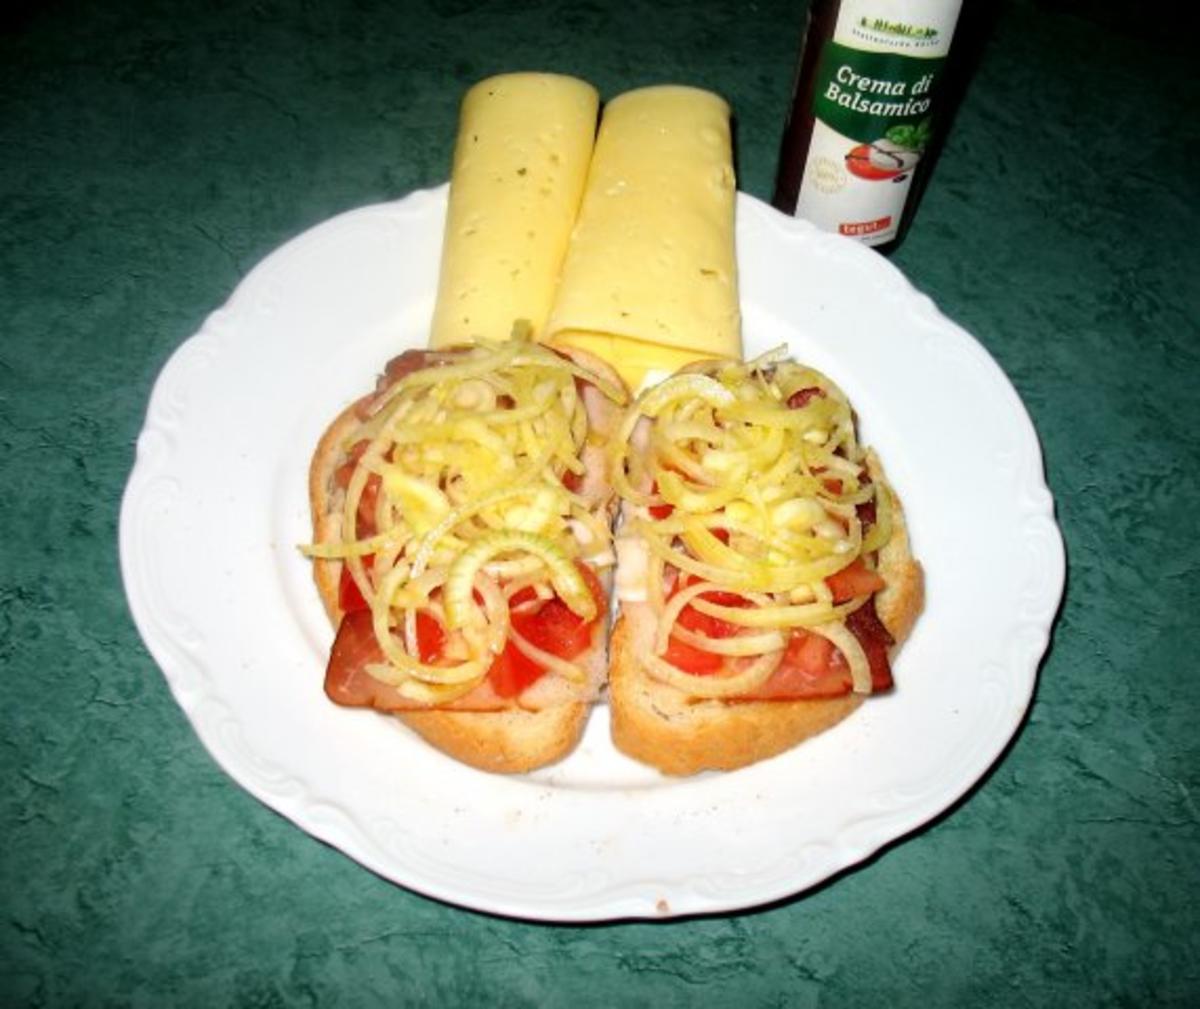 Snack/Brot - Toast mit Tomaten, Zwiebeln und rohem Schinken - Rezept - Bild Nr. 3